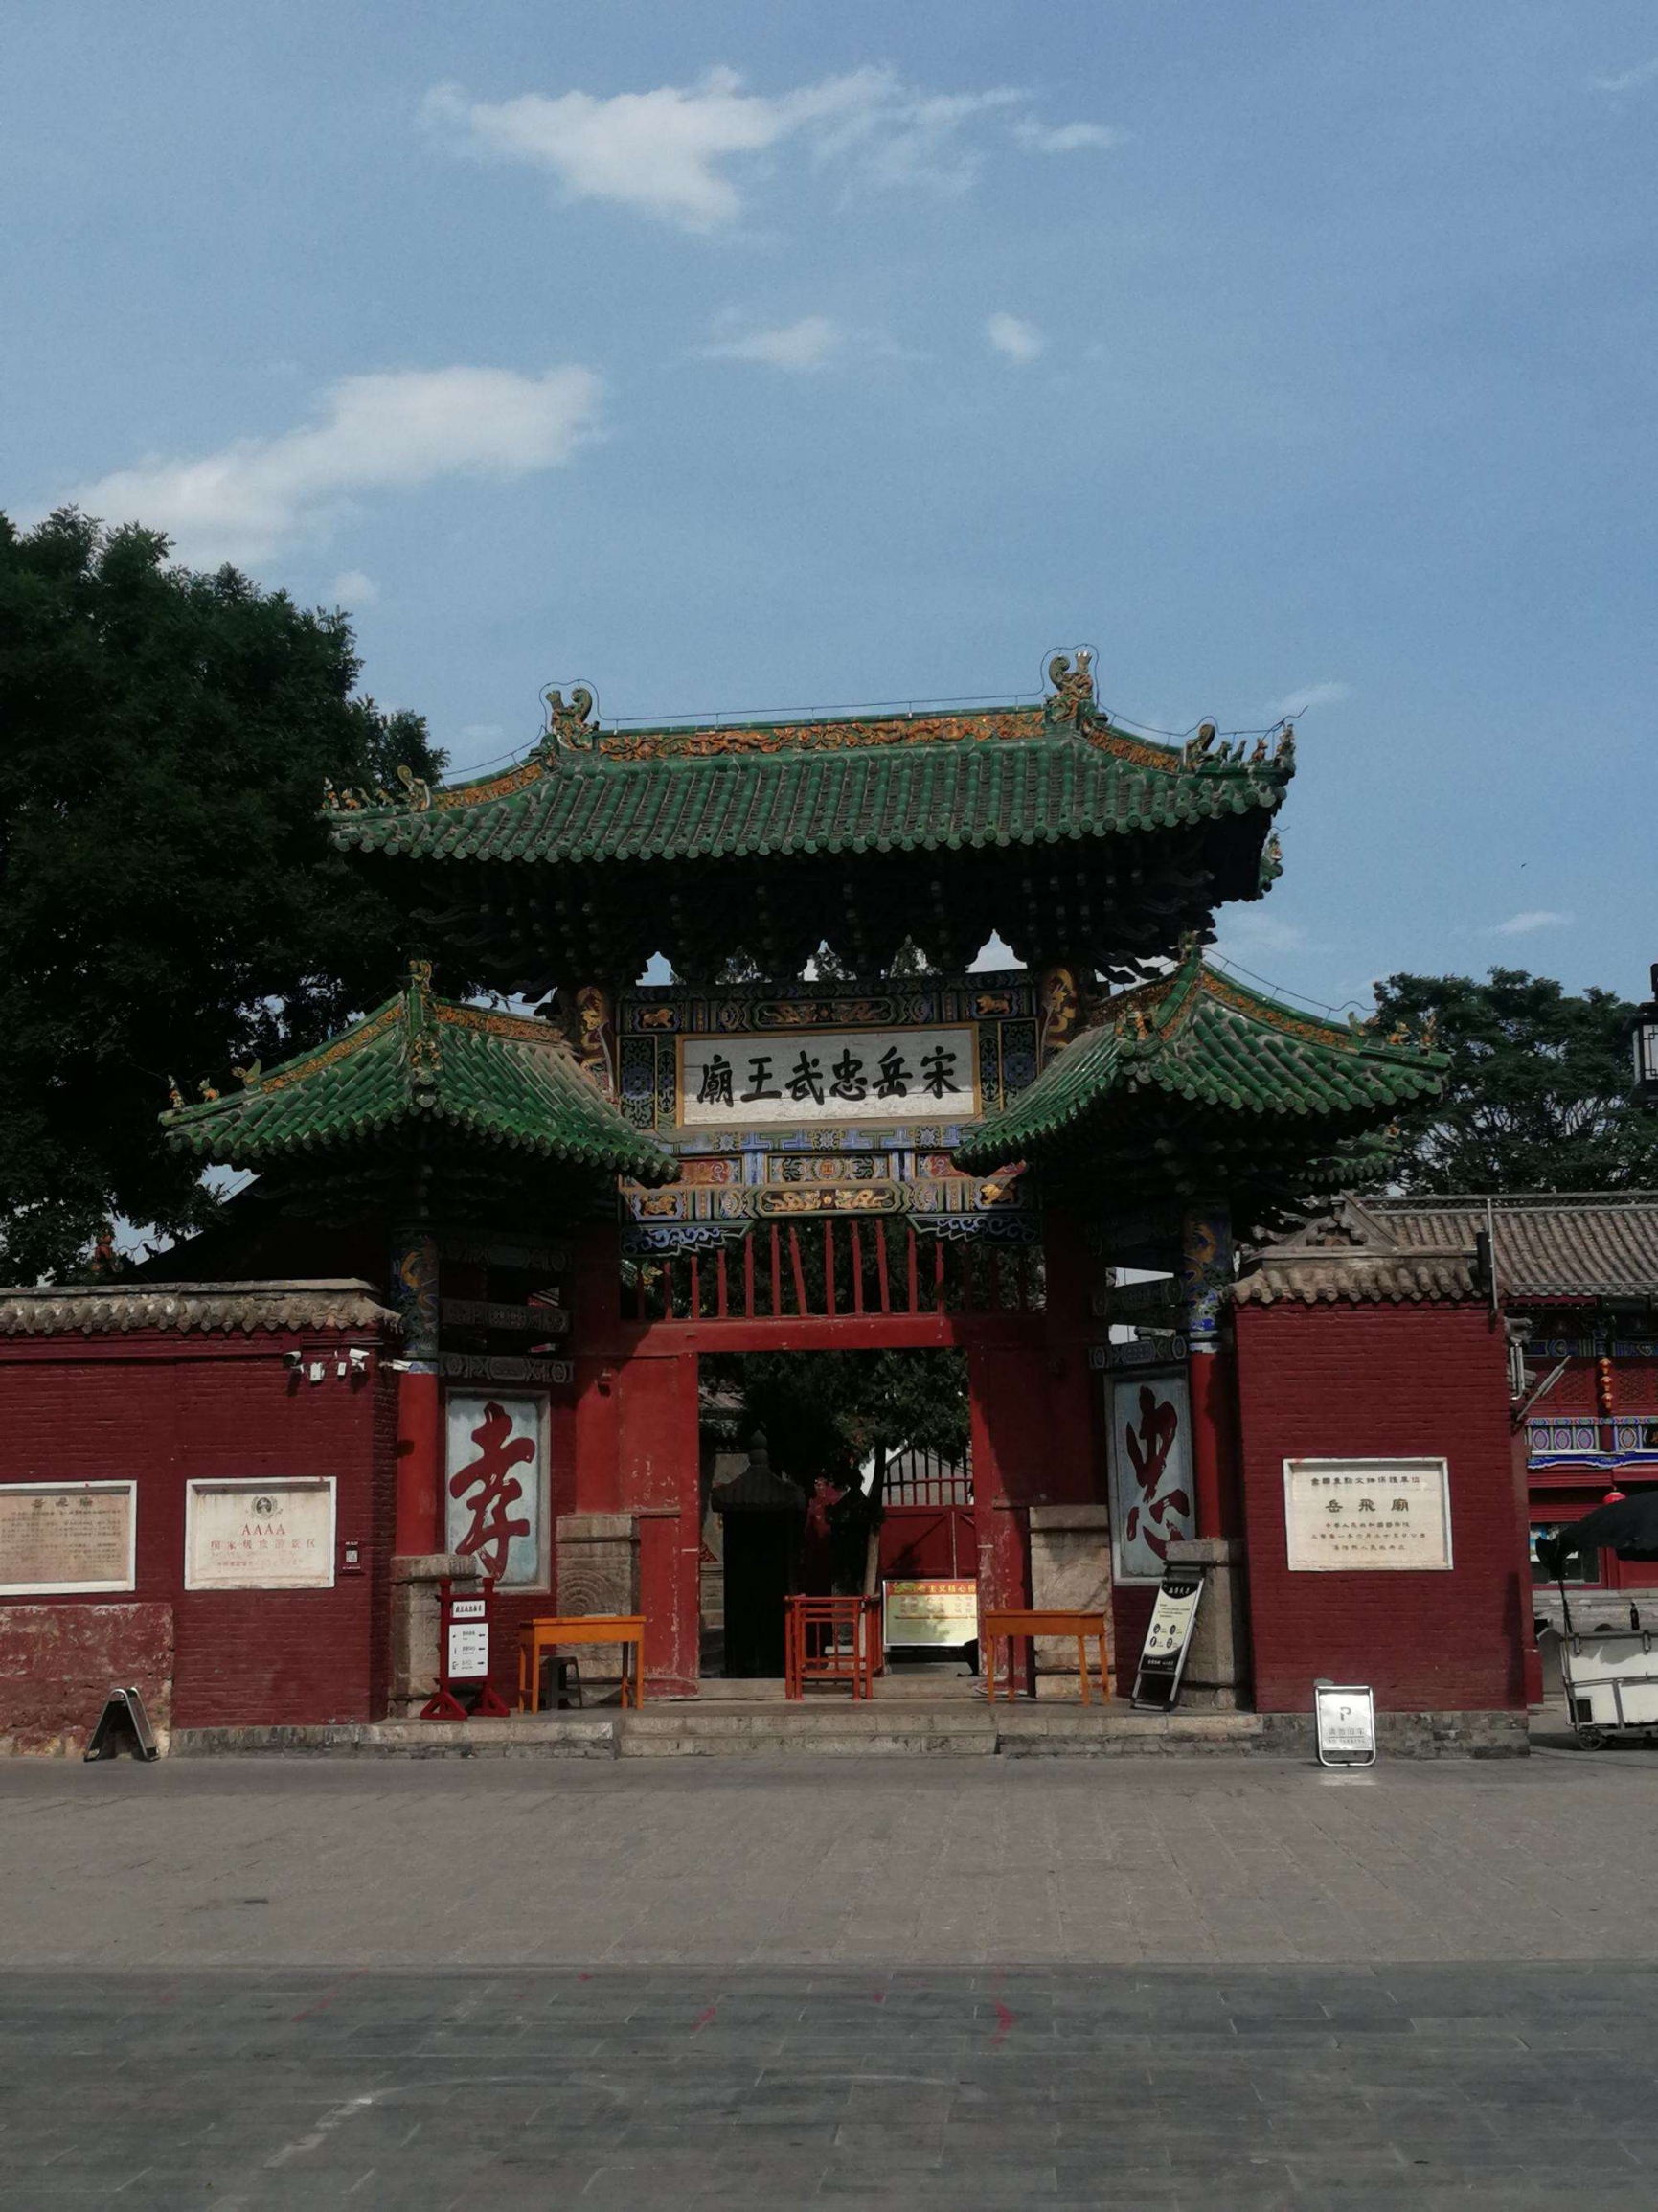 安阳岳飞庙位于河南省安阳市汤阴县岳庙街84号，是一座历史悠久、文化底蕴深厚的古建筑群。距离安阳市区2